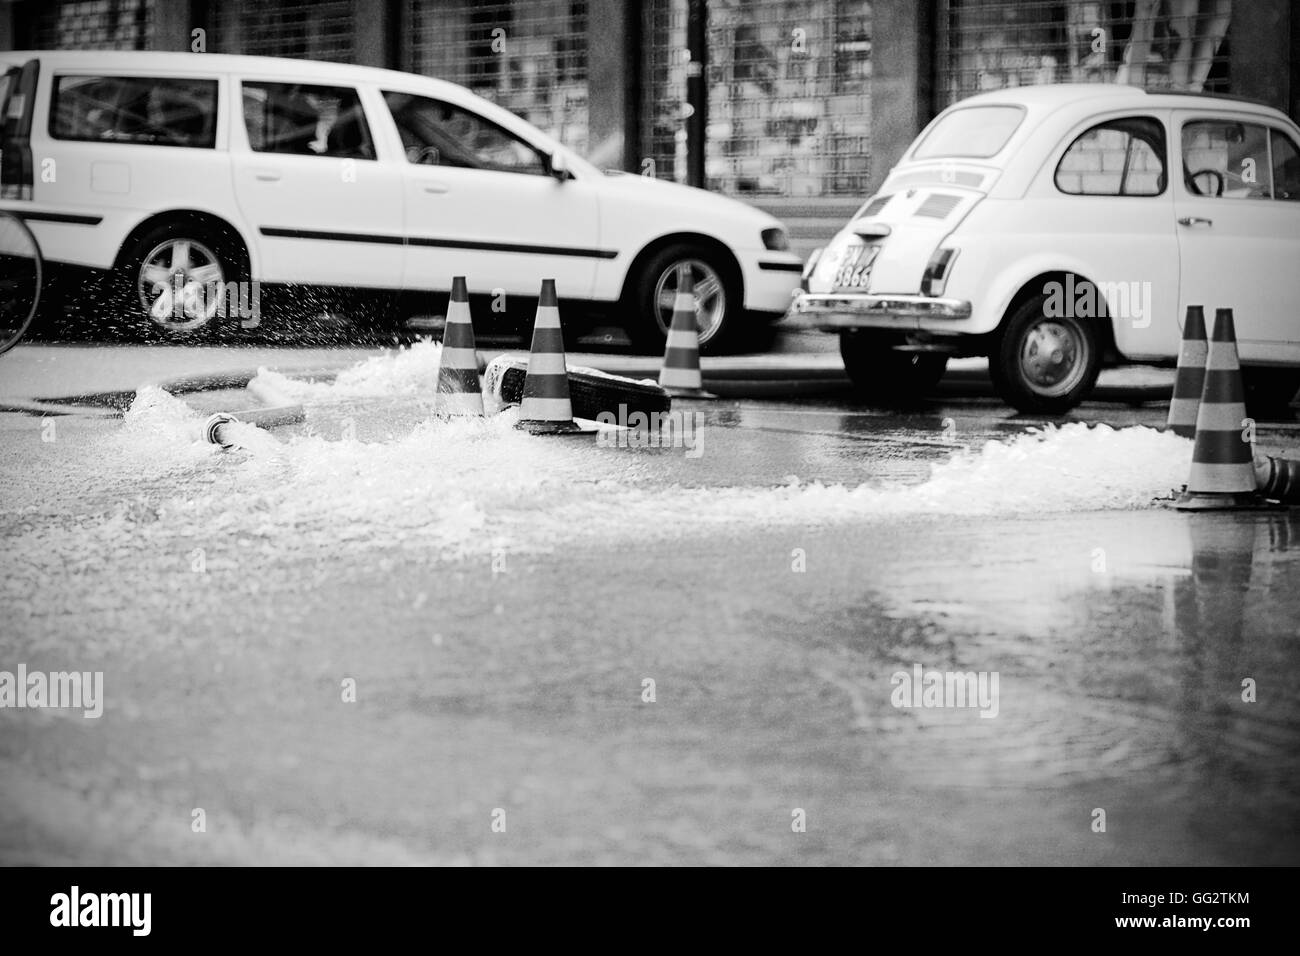 Proiettori eccezionali a Pordenone nel novembre 2010 - Pordenone alluvione Novembre 2010 - Massimiliano Scarpa fotografo Foto Stock